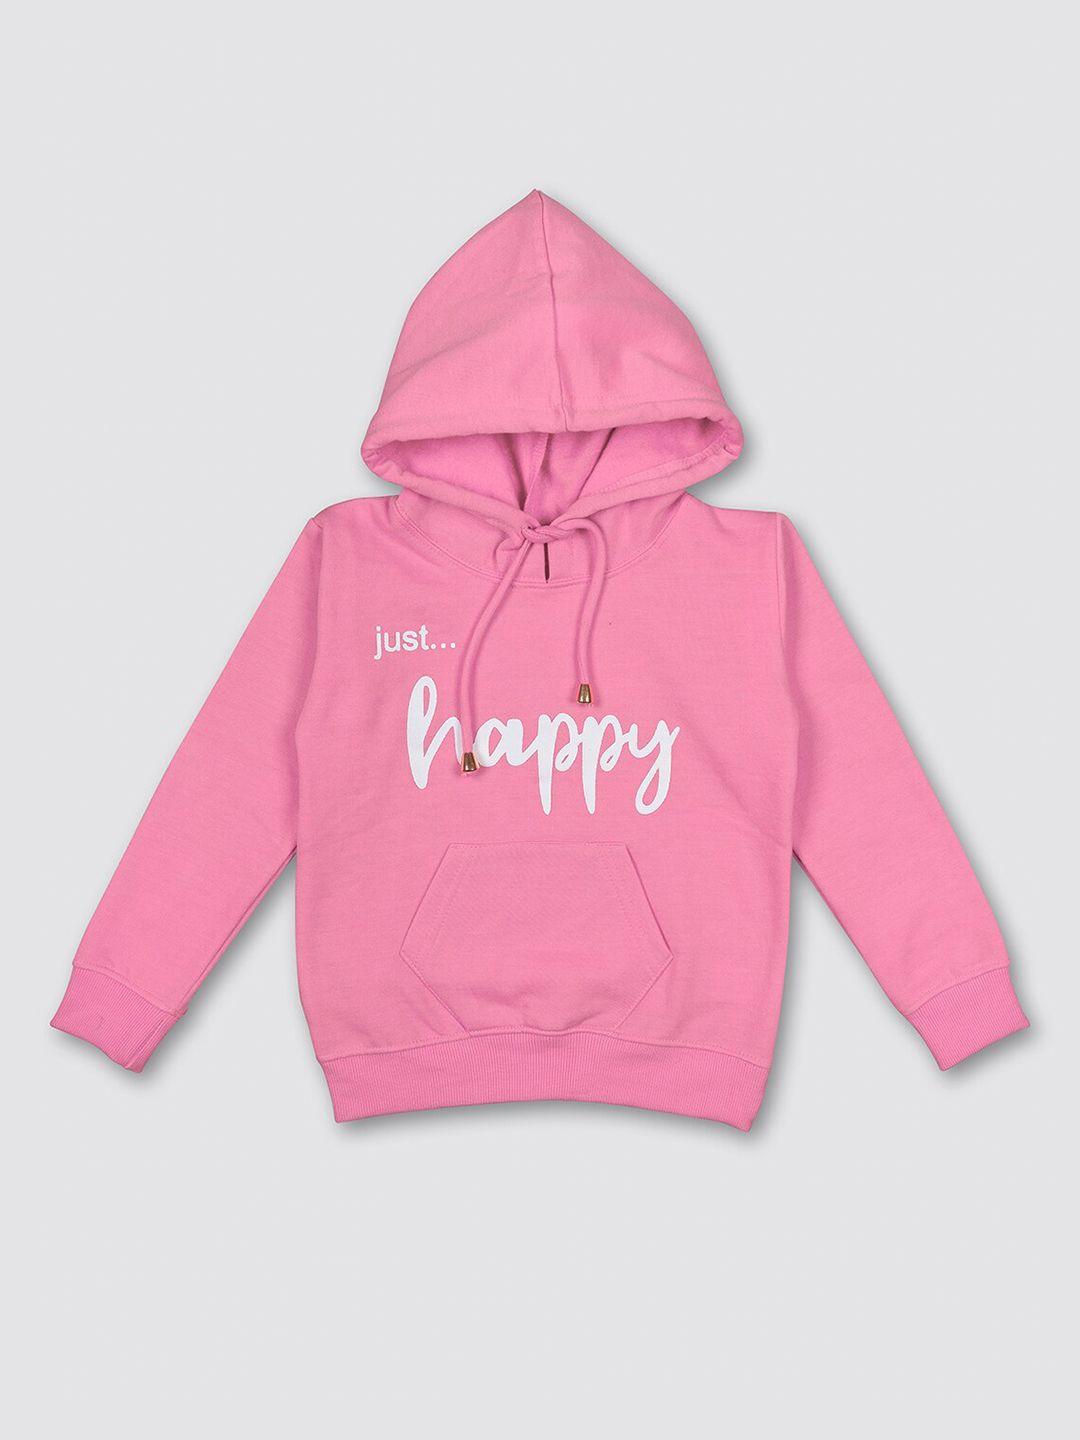 myy kids pink printed hooded fleece sweatshirt